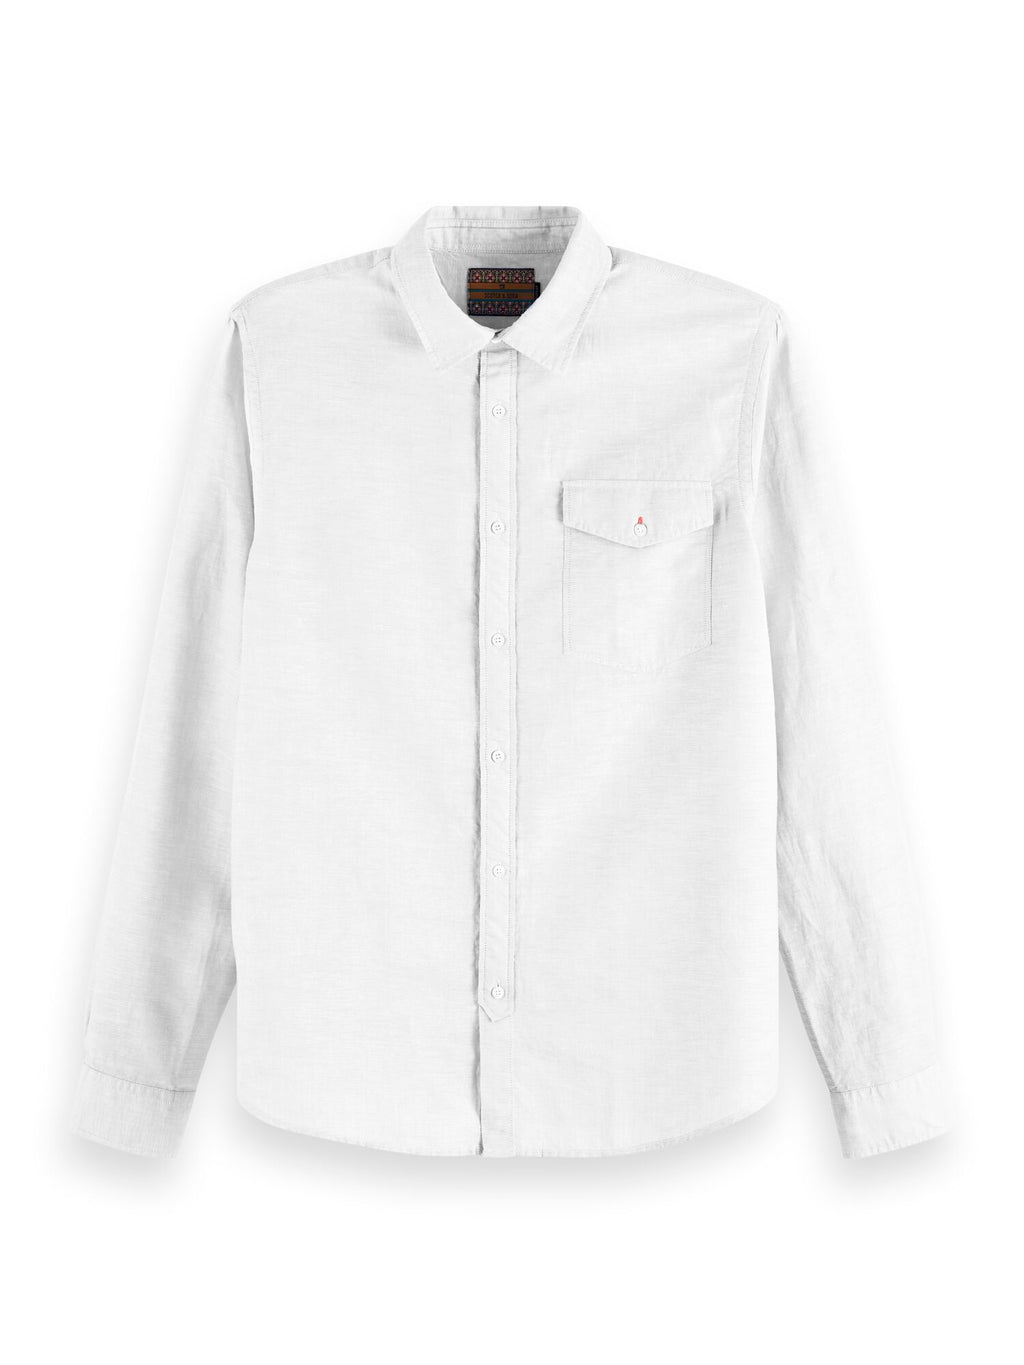 Scotch and Soda Classic Shirt - White - Mitchell McCabe Menswear